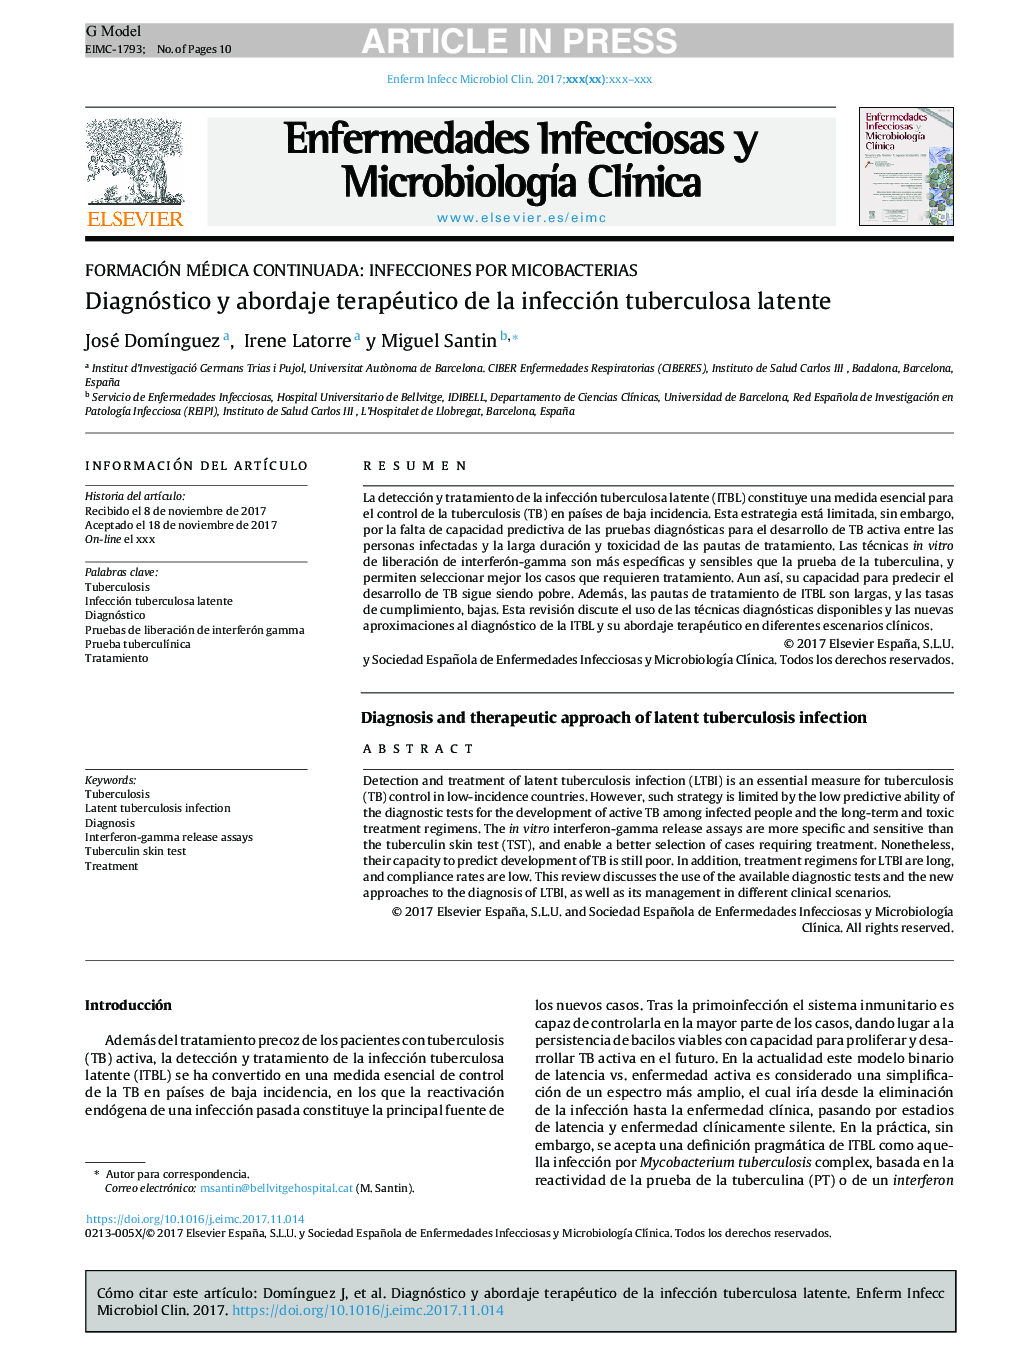 Diagnóstico y abordaje terapéutico de la infección tuberculosa latente